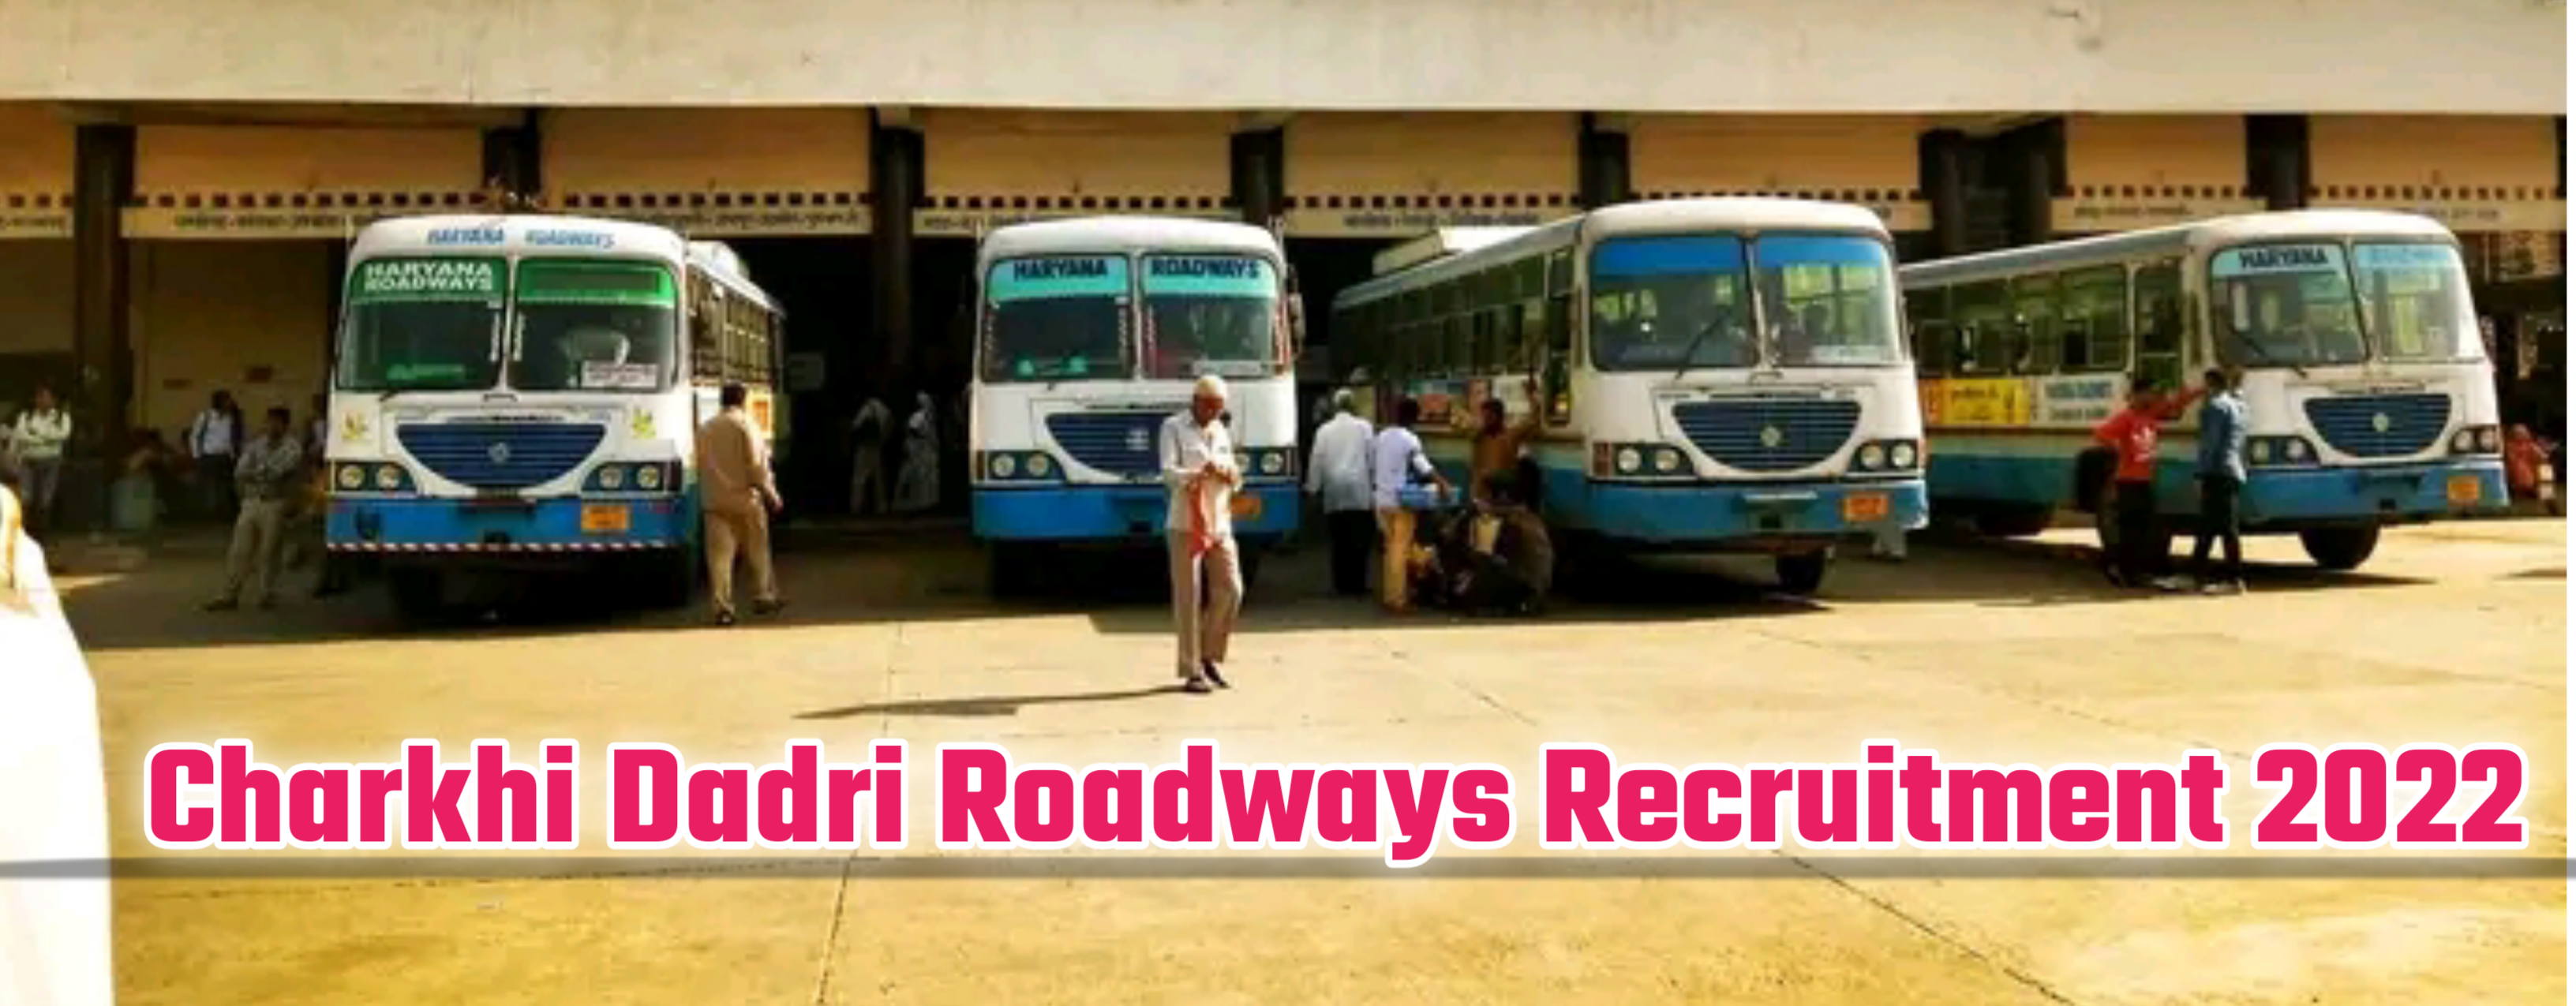 Charkhi Dadri Roadways Recruitment 2022